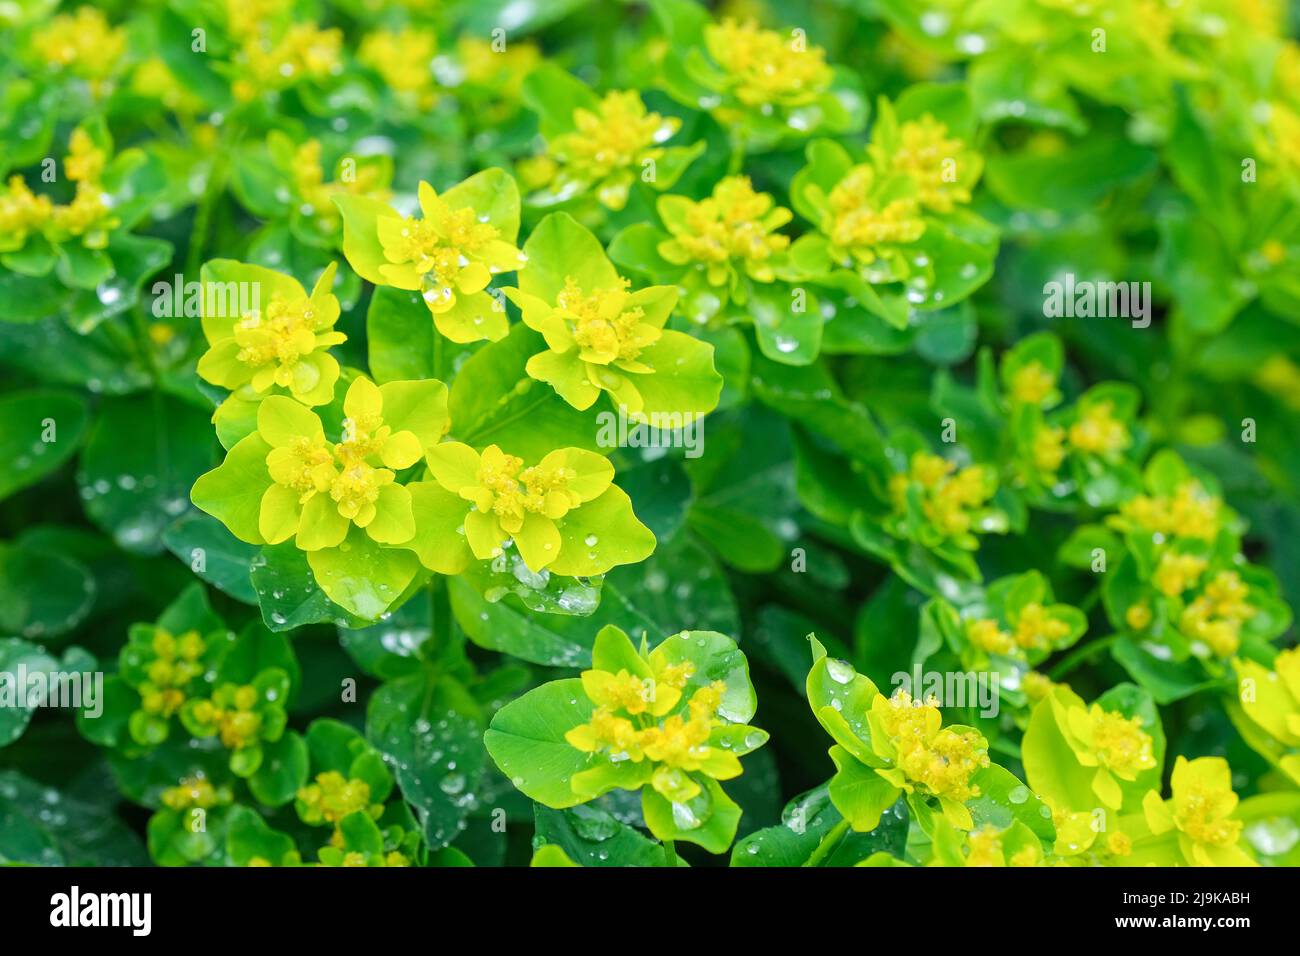 Polychromie, Polsterspurge, Chrom-Spurge. Leuchtend goldgelbe Blüten, über einem Kissen hellgrüner Blätter. Stockfoto